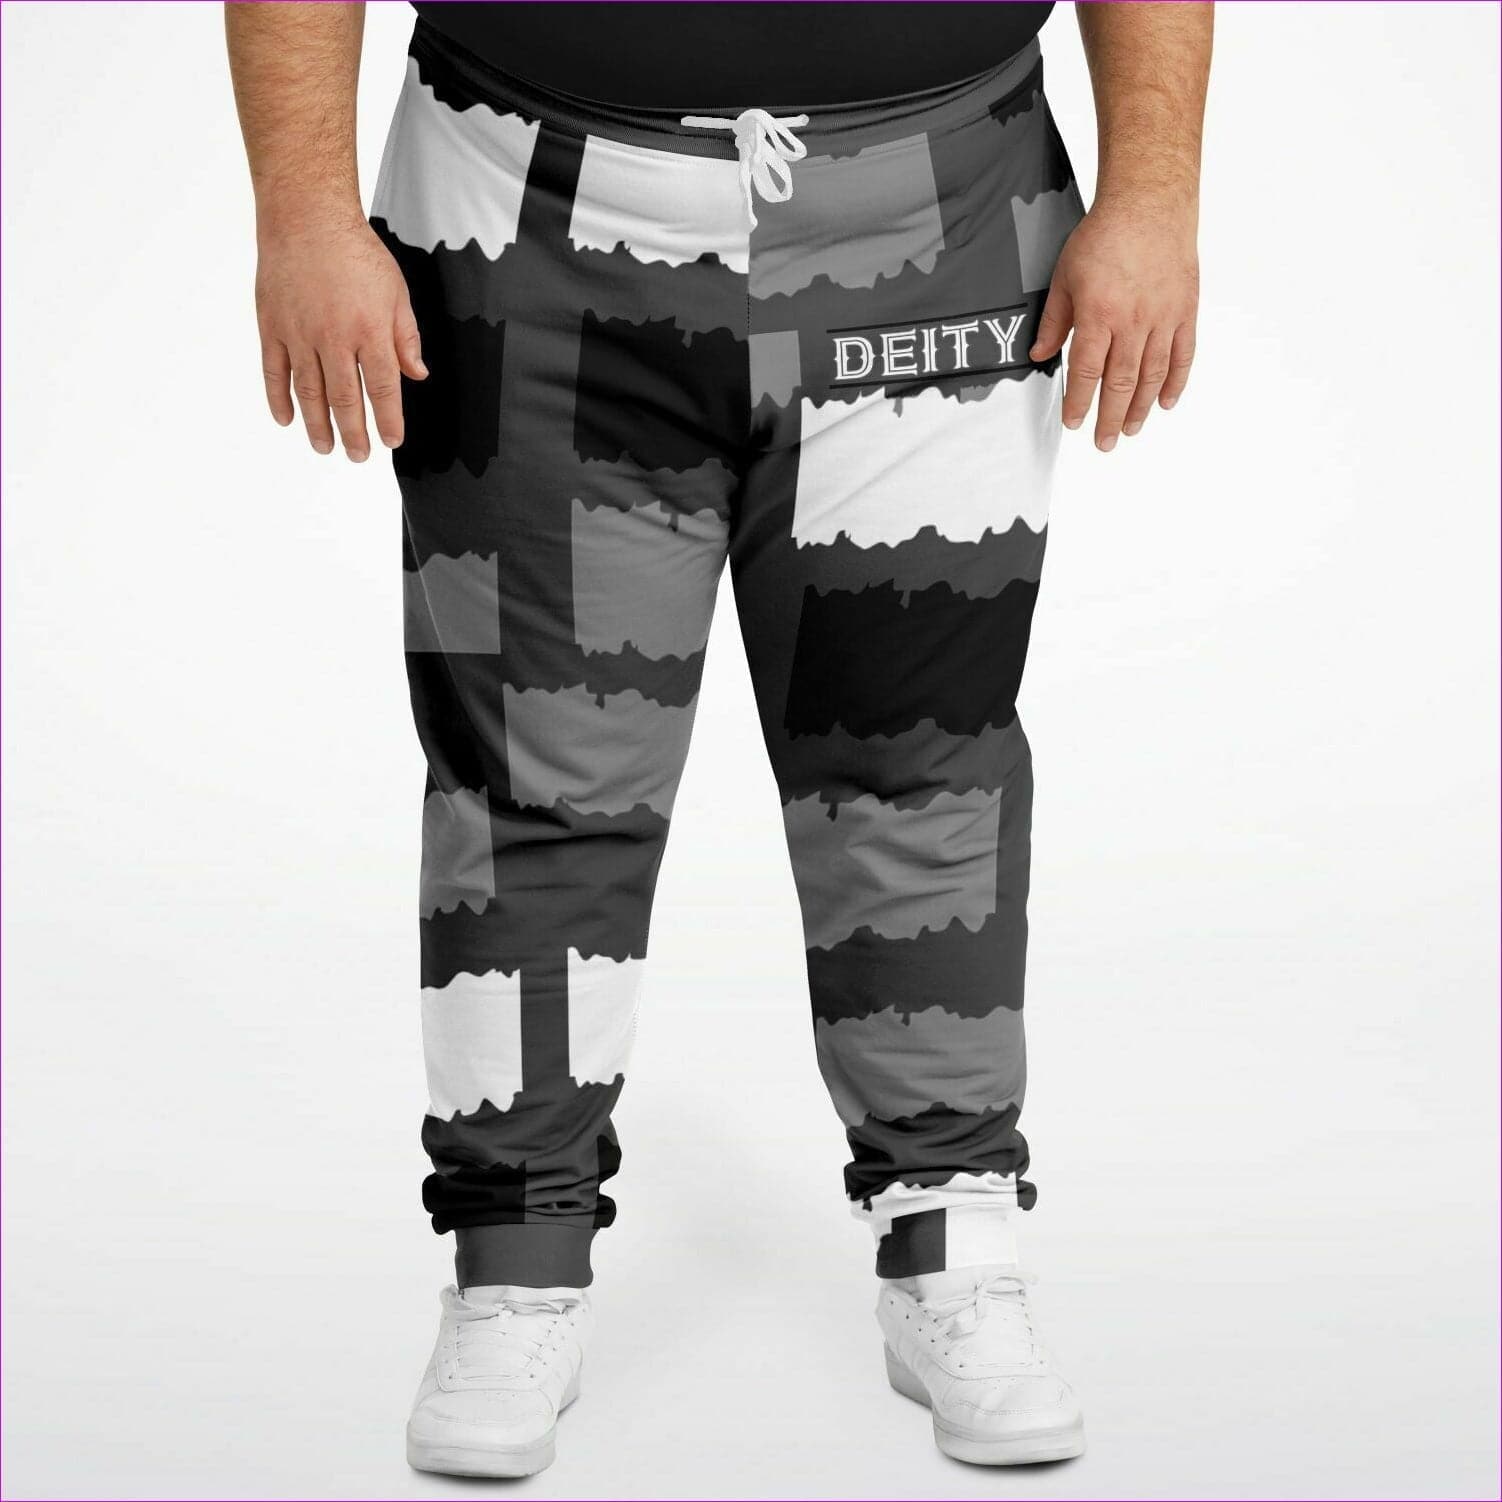 - Deity Premium Joggers Voluptuous (+) Plus Size - Fashion Plus-size Jogger at TFC&H Co.